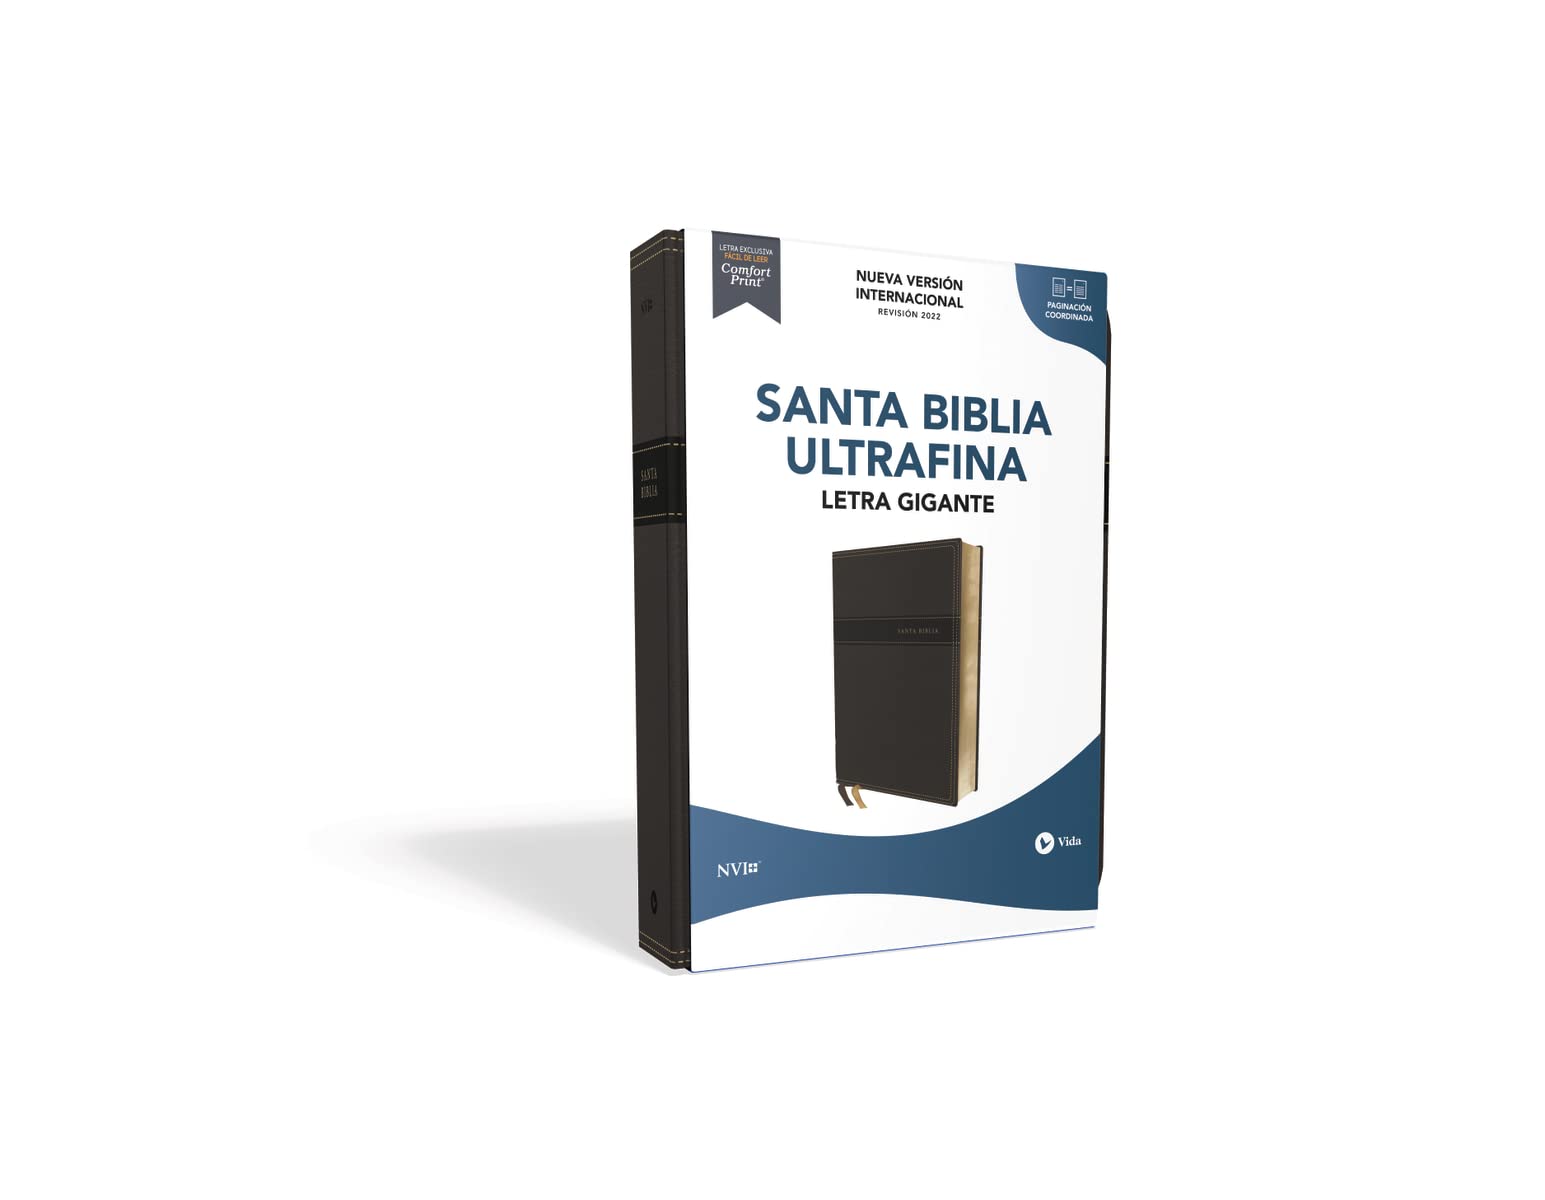 NVI, Santa Biblia, Texto revisado 2022, Ultrafina, Letra Gigante, Leathersoft, Negro, Palabras de Jesús en Rojo (Spanish Edition)